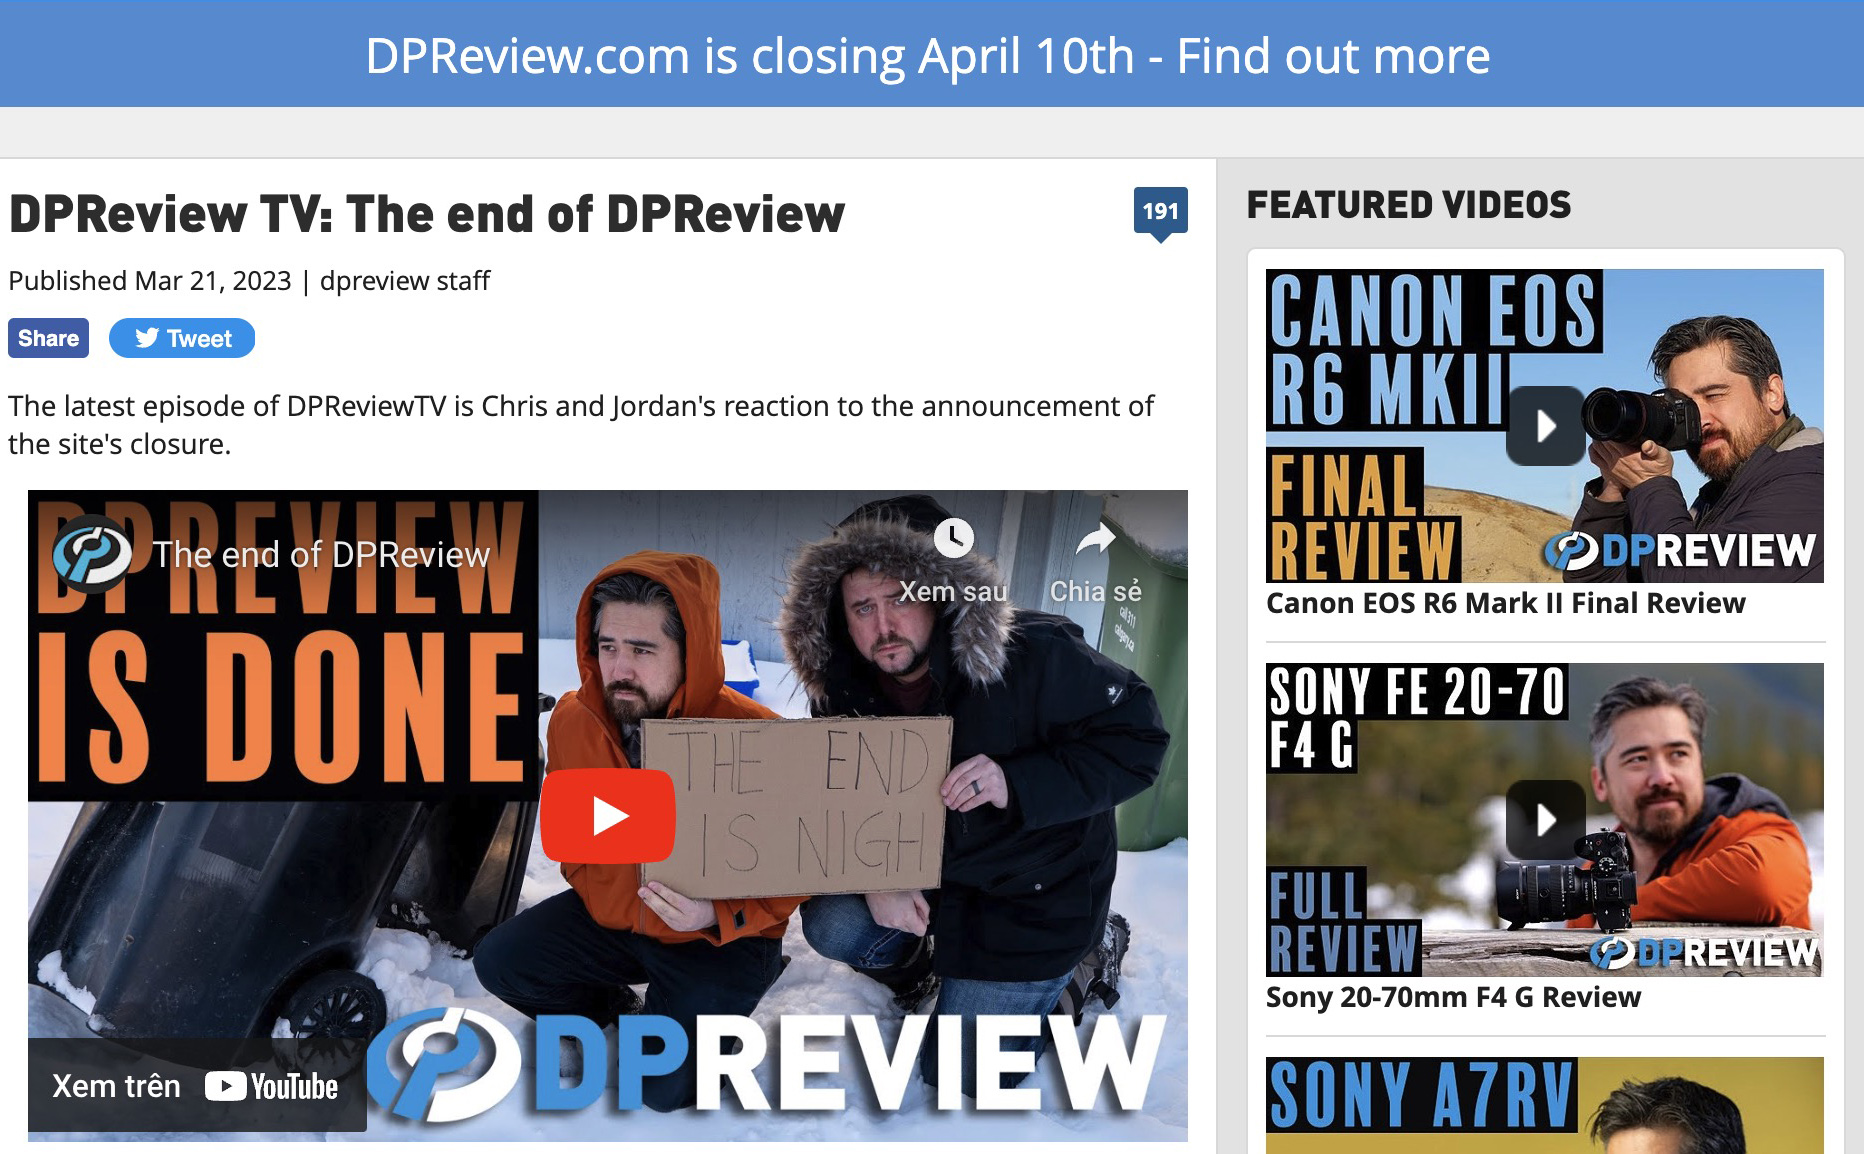 DPReview bị đóng, sẽ không còn post nội dung mới từ sau 10.4